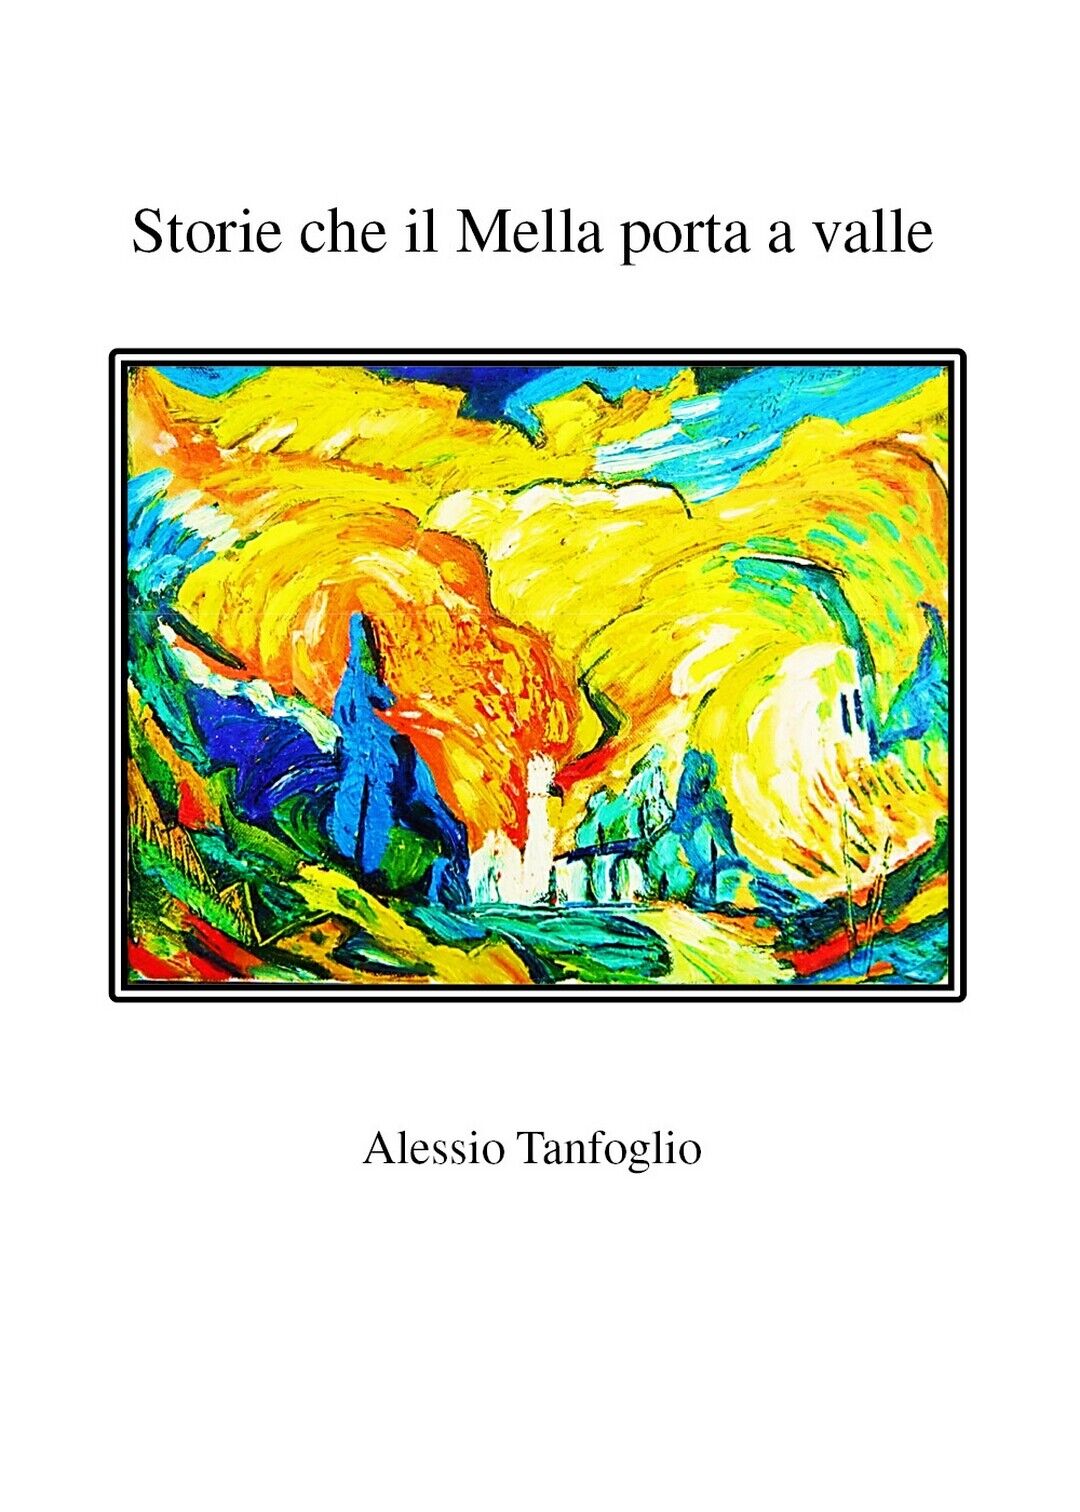 Storie che il Mella porta a valle  di Alessio Tanfoglio,  2019,  Youcanprint